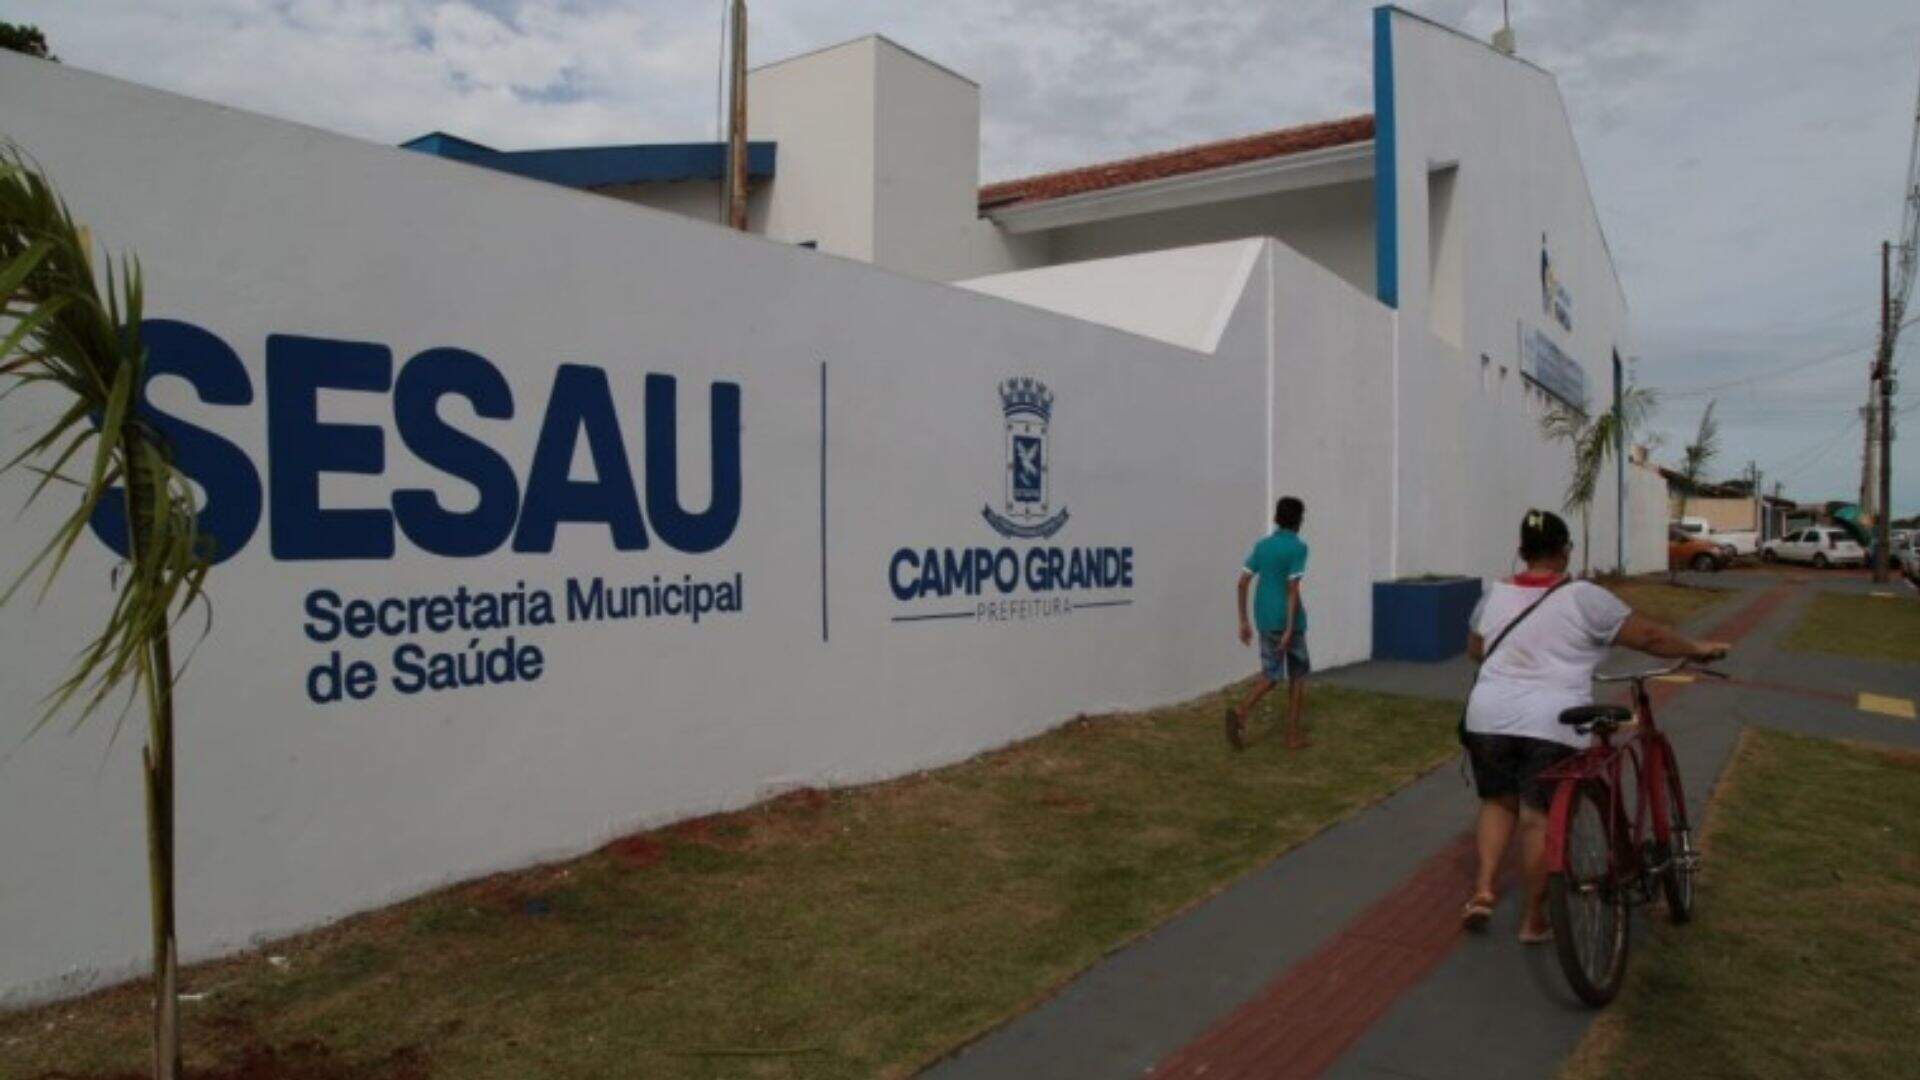 De receita médica a denúncias, Sesau deve guardar ou eliminar documentos em Campo Grande